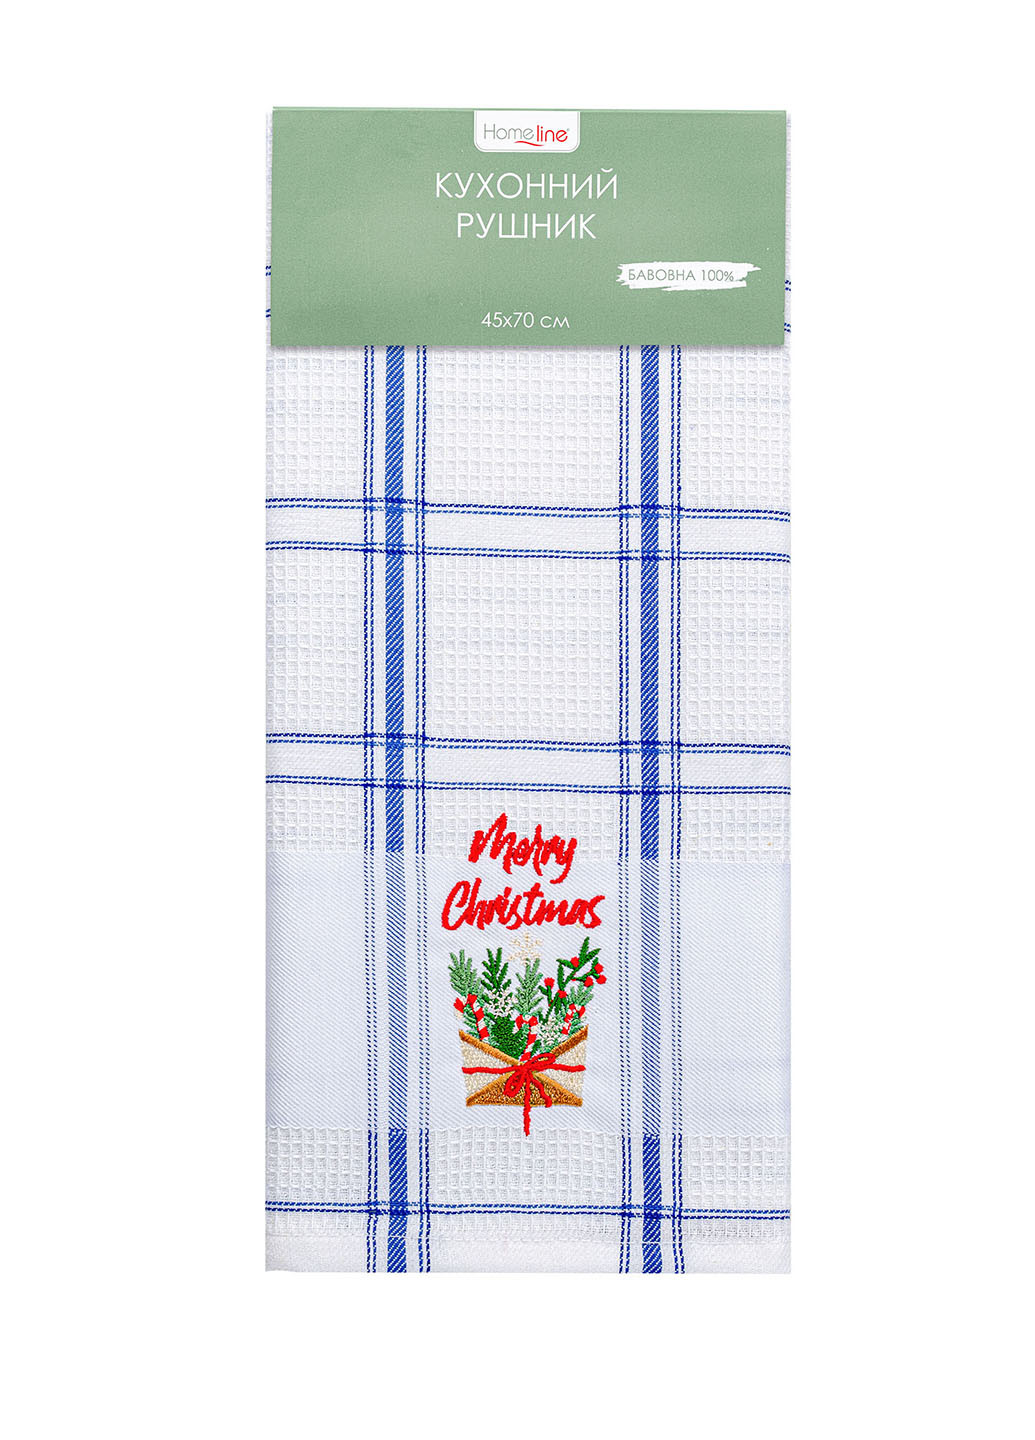 Home Line полотенце вафельное 45х70 с вышивкой новогодний синий производство - Турция